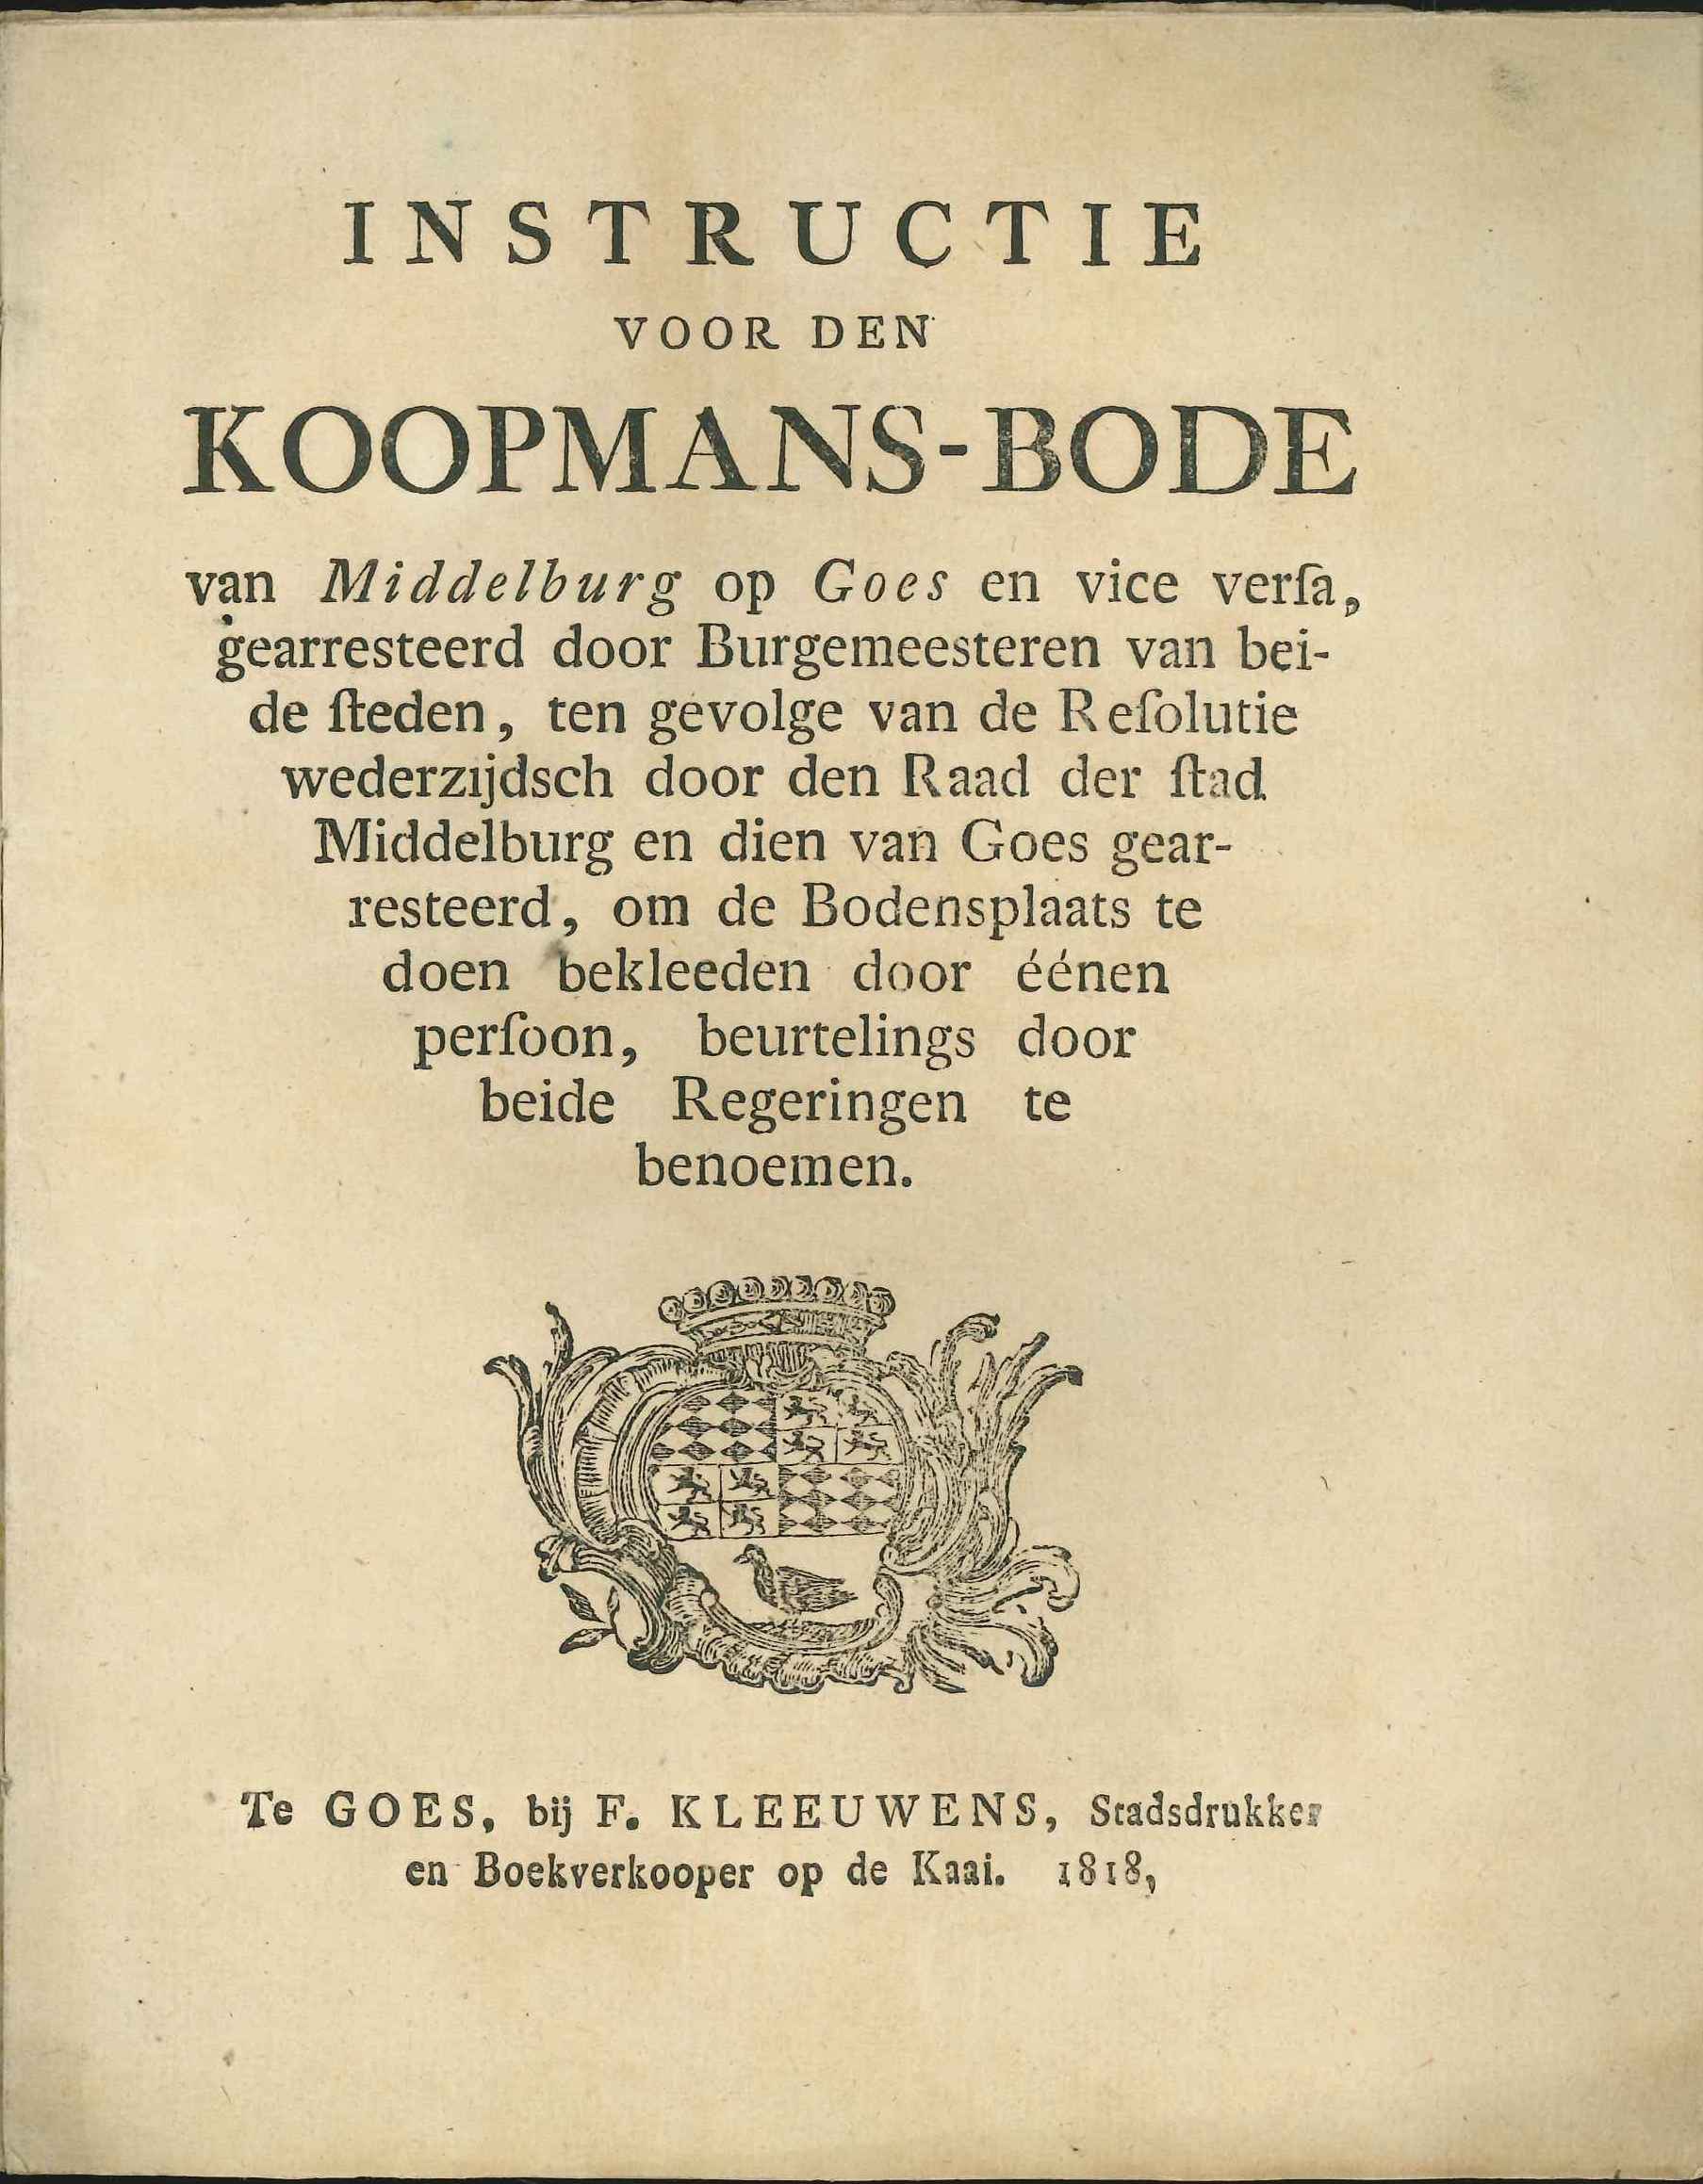 Instructie voor de koopmansbode van Middelburg op Goes en vice versa, 1818.